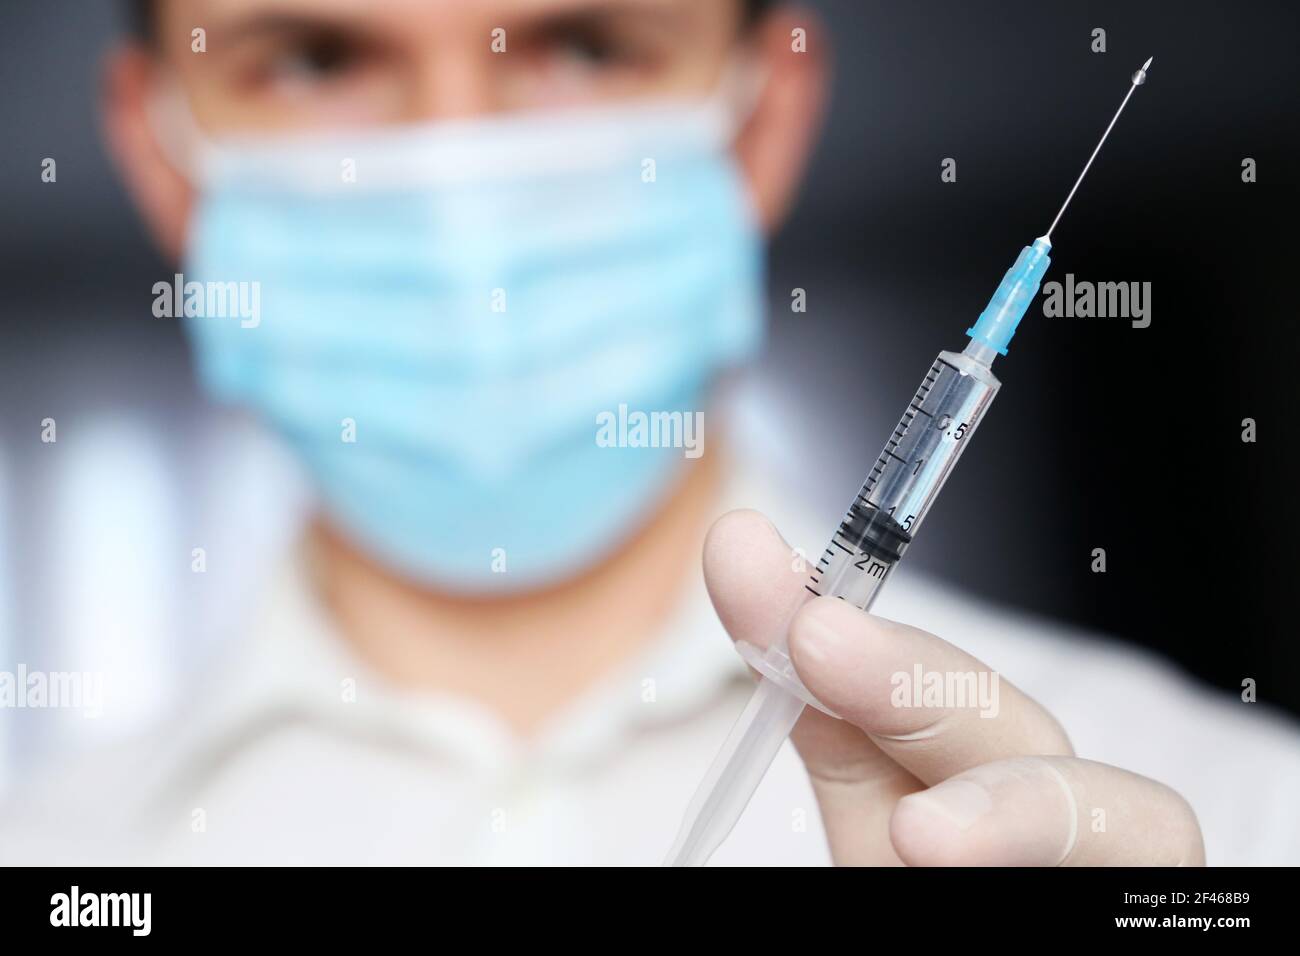 Spritze in Arzt Hand, Mann in medizinische Maske und Schutzhandschuhe Vorbereitung auf die Injektion. Konzept der Impfung während der Covid-19-Pandemie Stockfoto